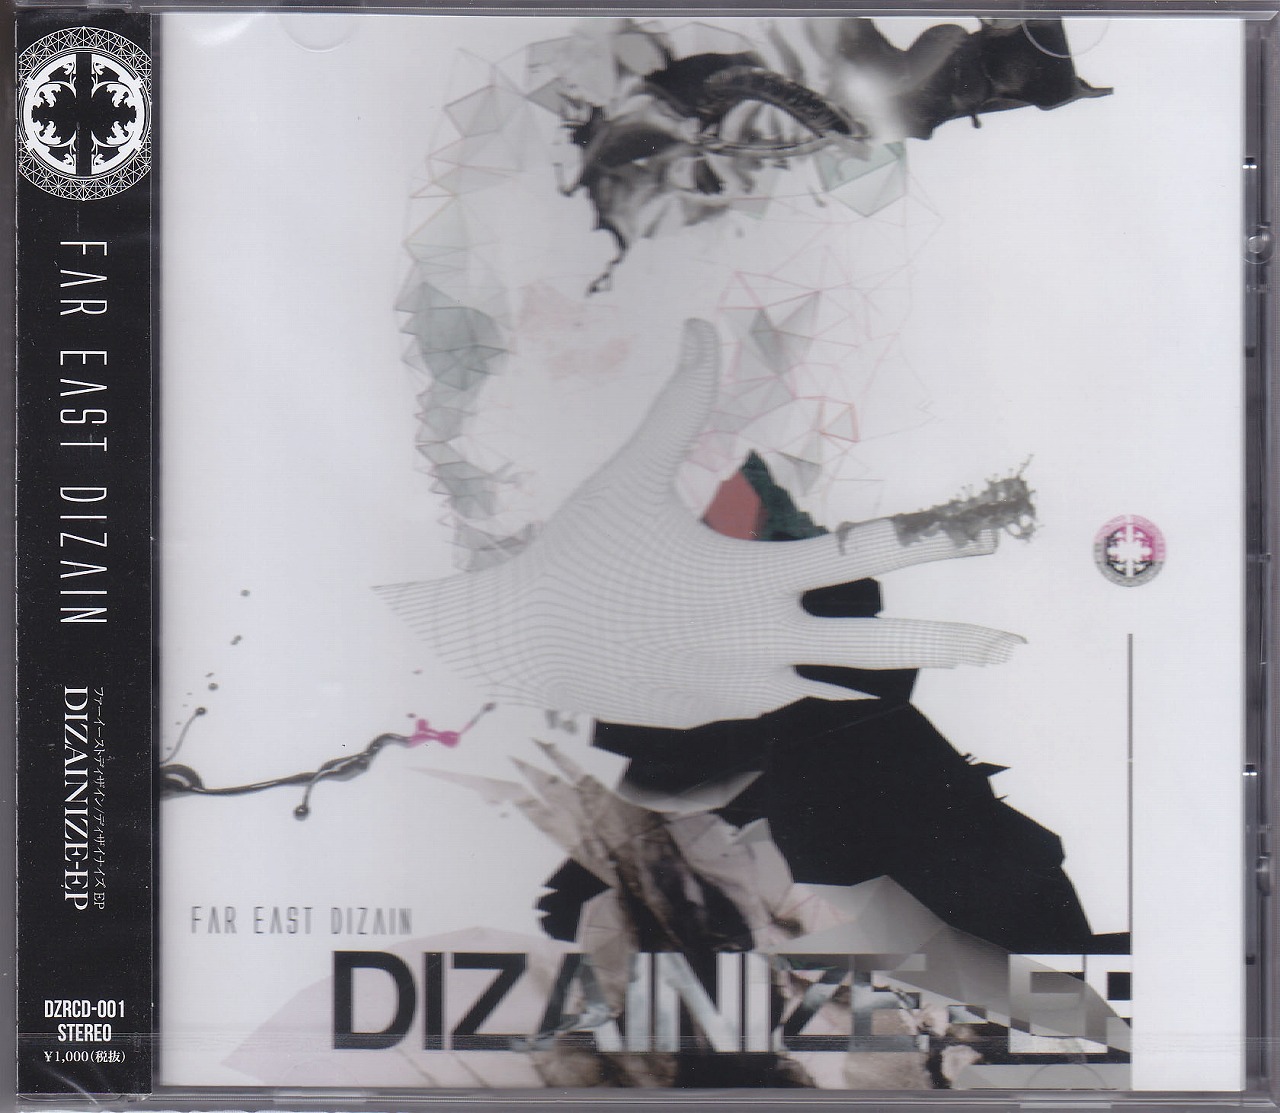 ファーイーストディザイン の CD DIZAINIZE-EP